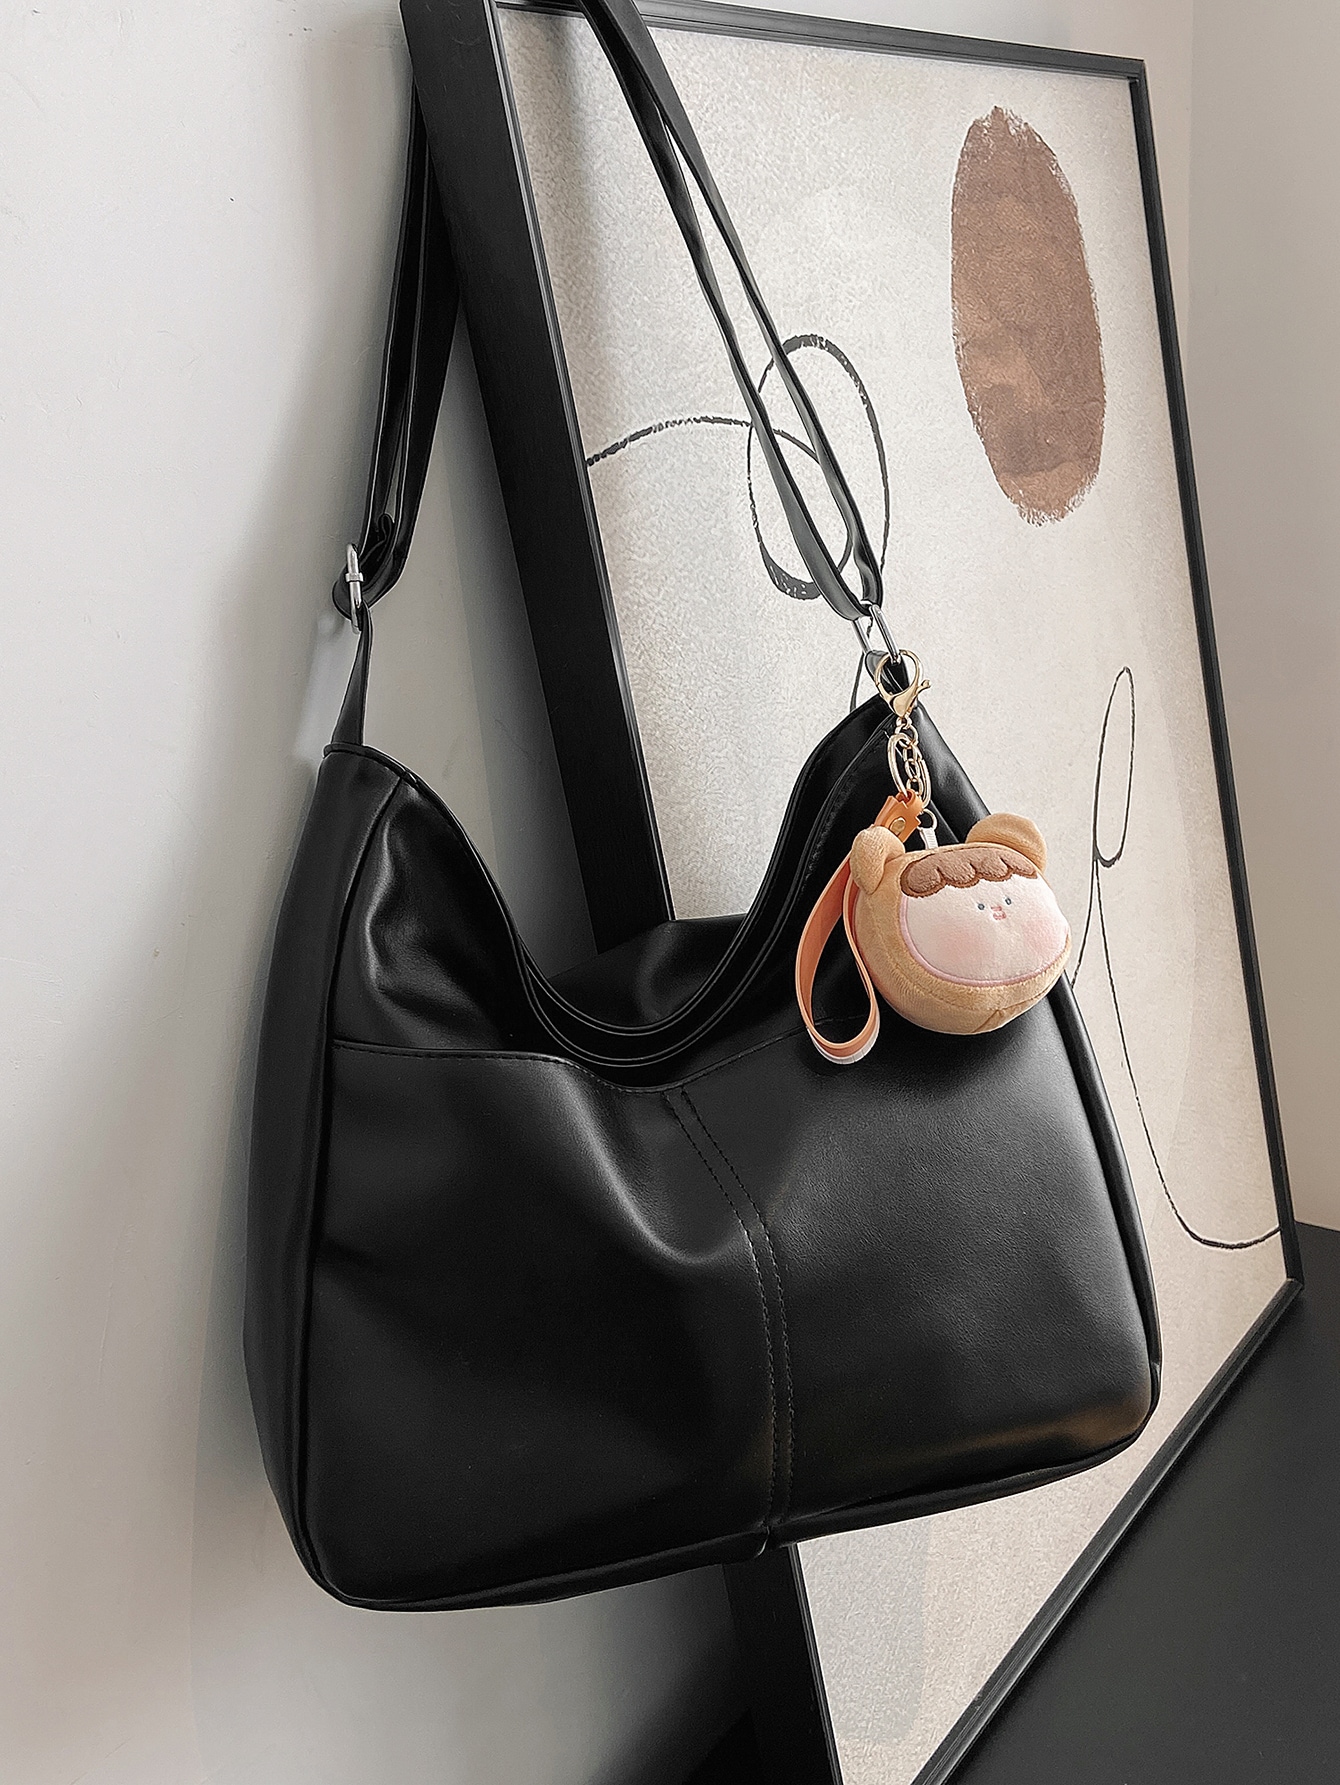 Сумка-хобо большой вместимости, черный рюкзак женский из мягкой кожи сумочка на плечо в стиле ретро повседневный дорожный ранец с карманами брендовый дизайн